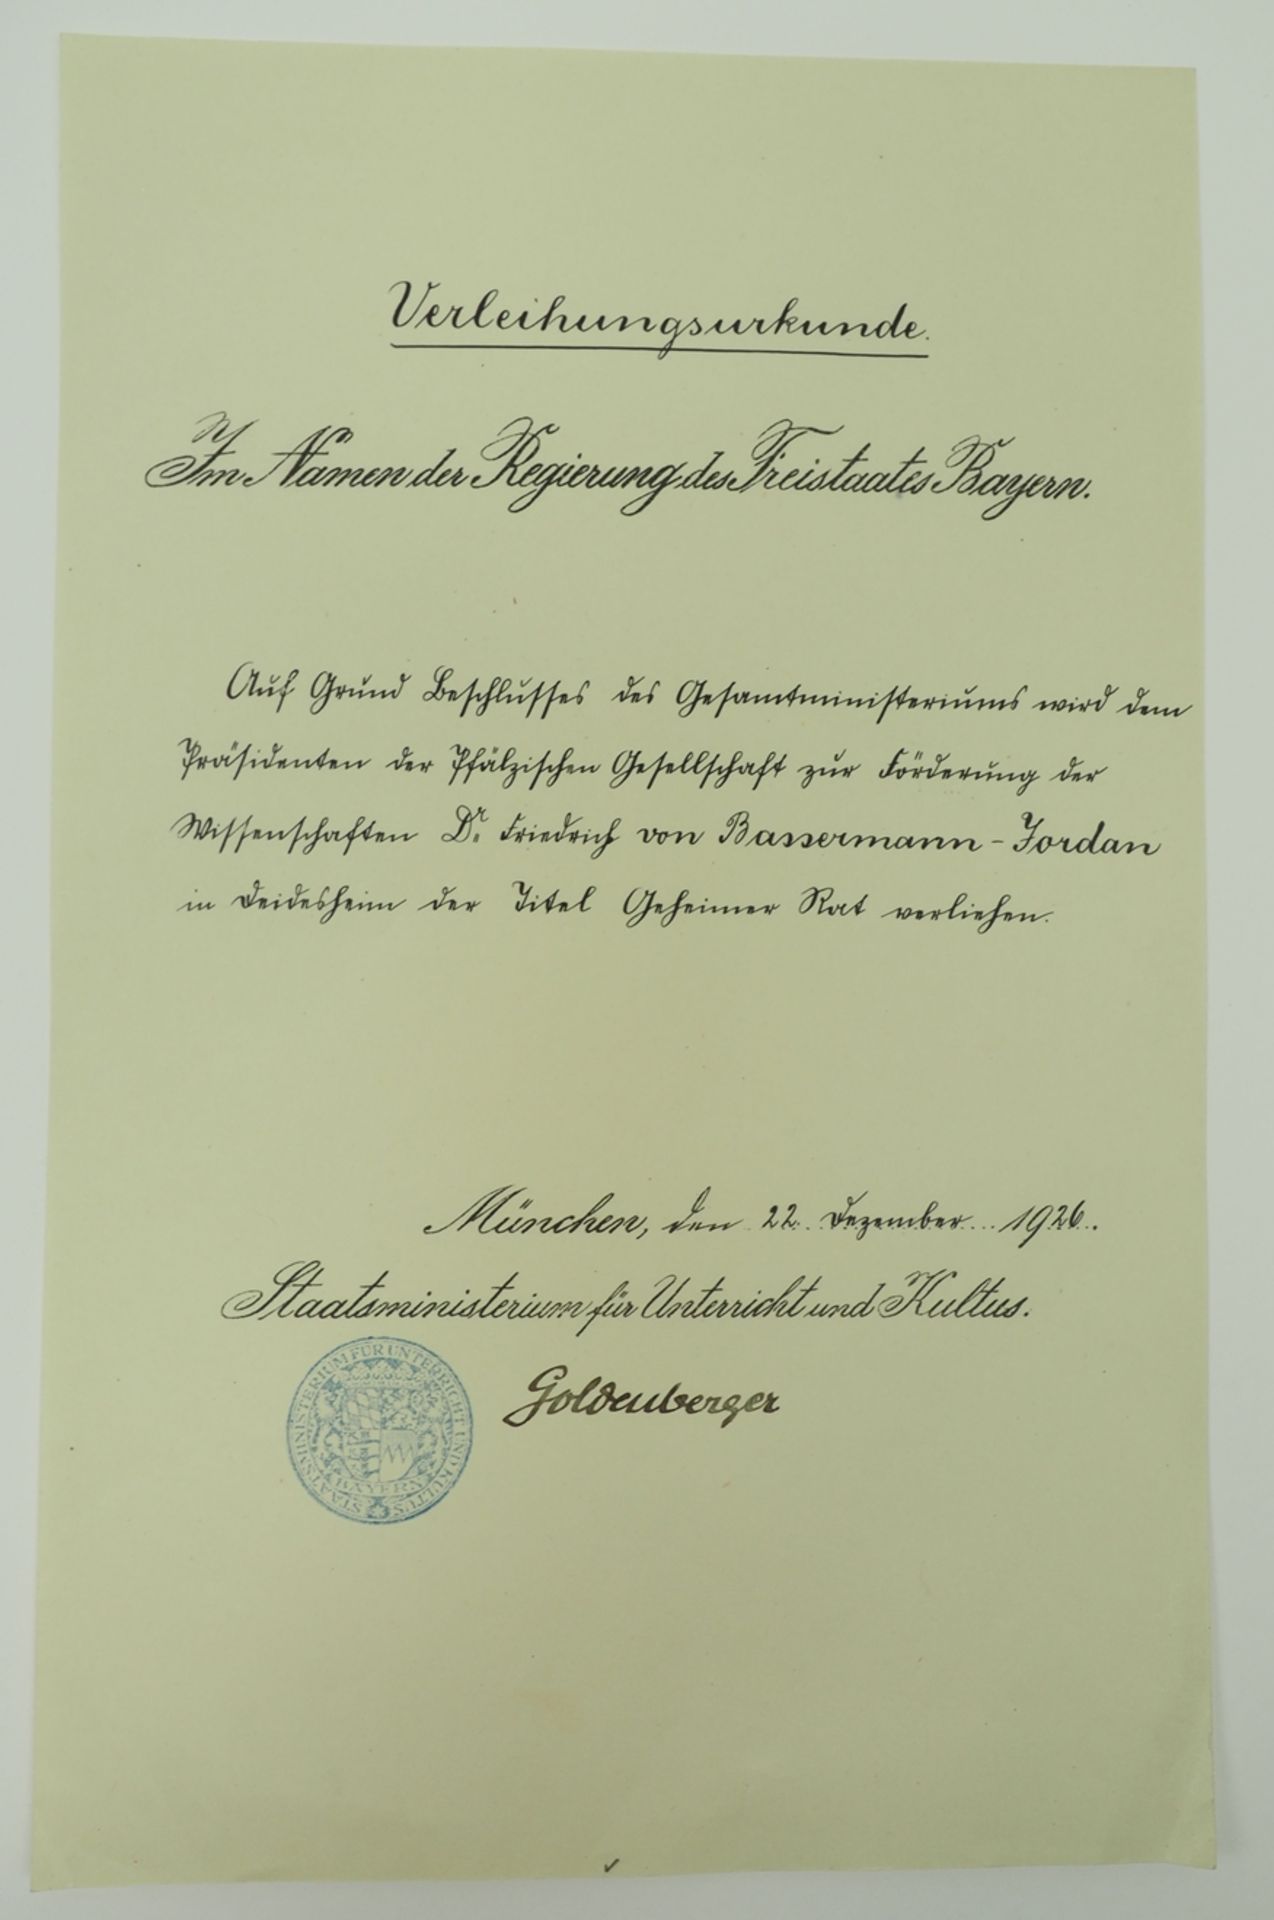 Geheimrat Dr. jur. Friedrich von Bassermann-Jordan: Ernennung zum Geheimrat. - Image 3 of 4